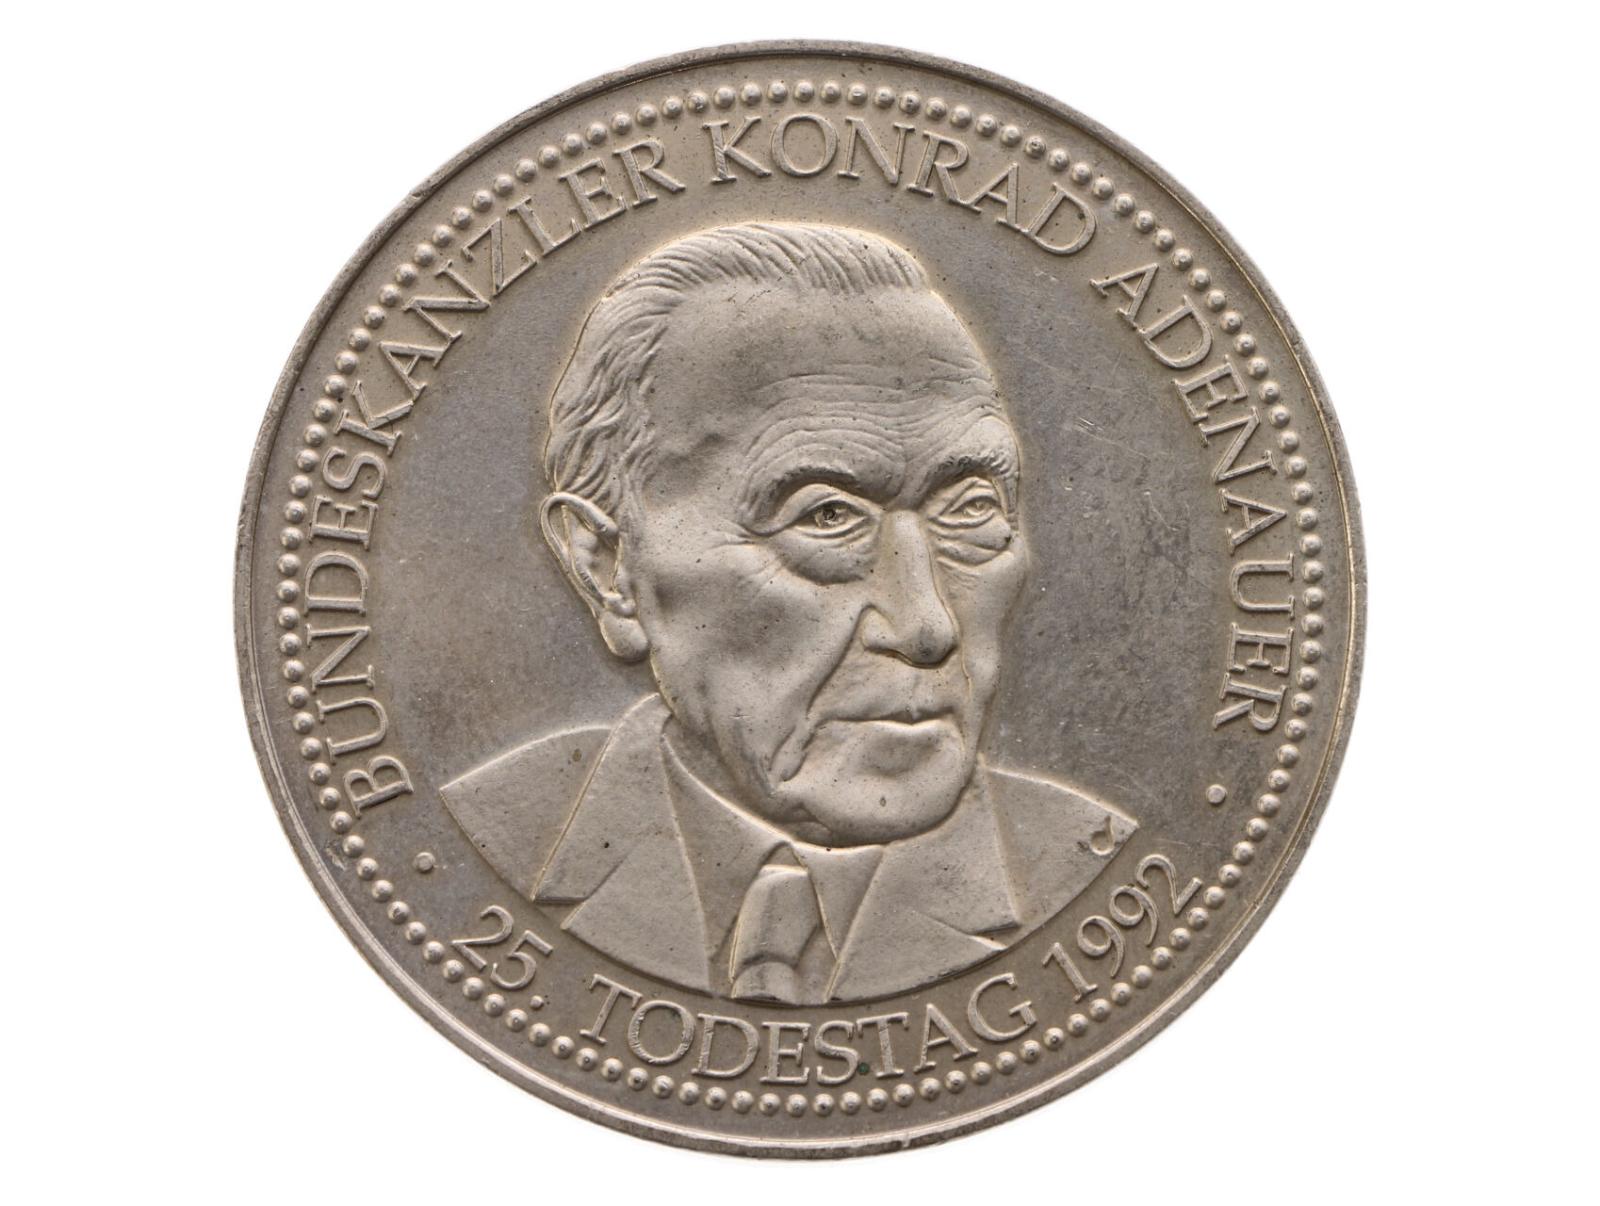 Postriebrená medaila Kancelár Konrad Adenauer, Nemecko 1992 - Numizmatika